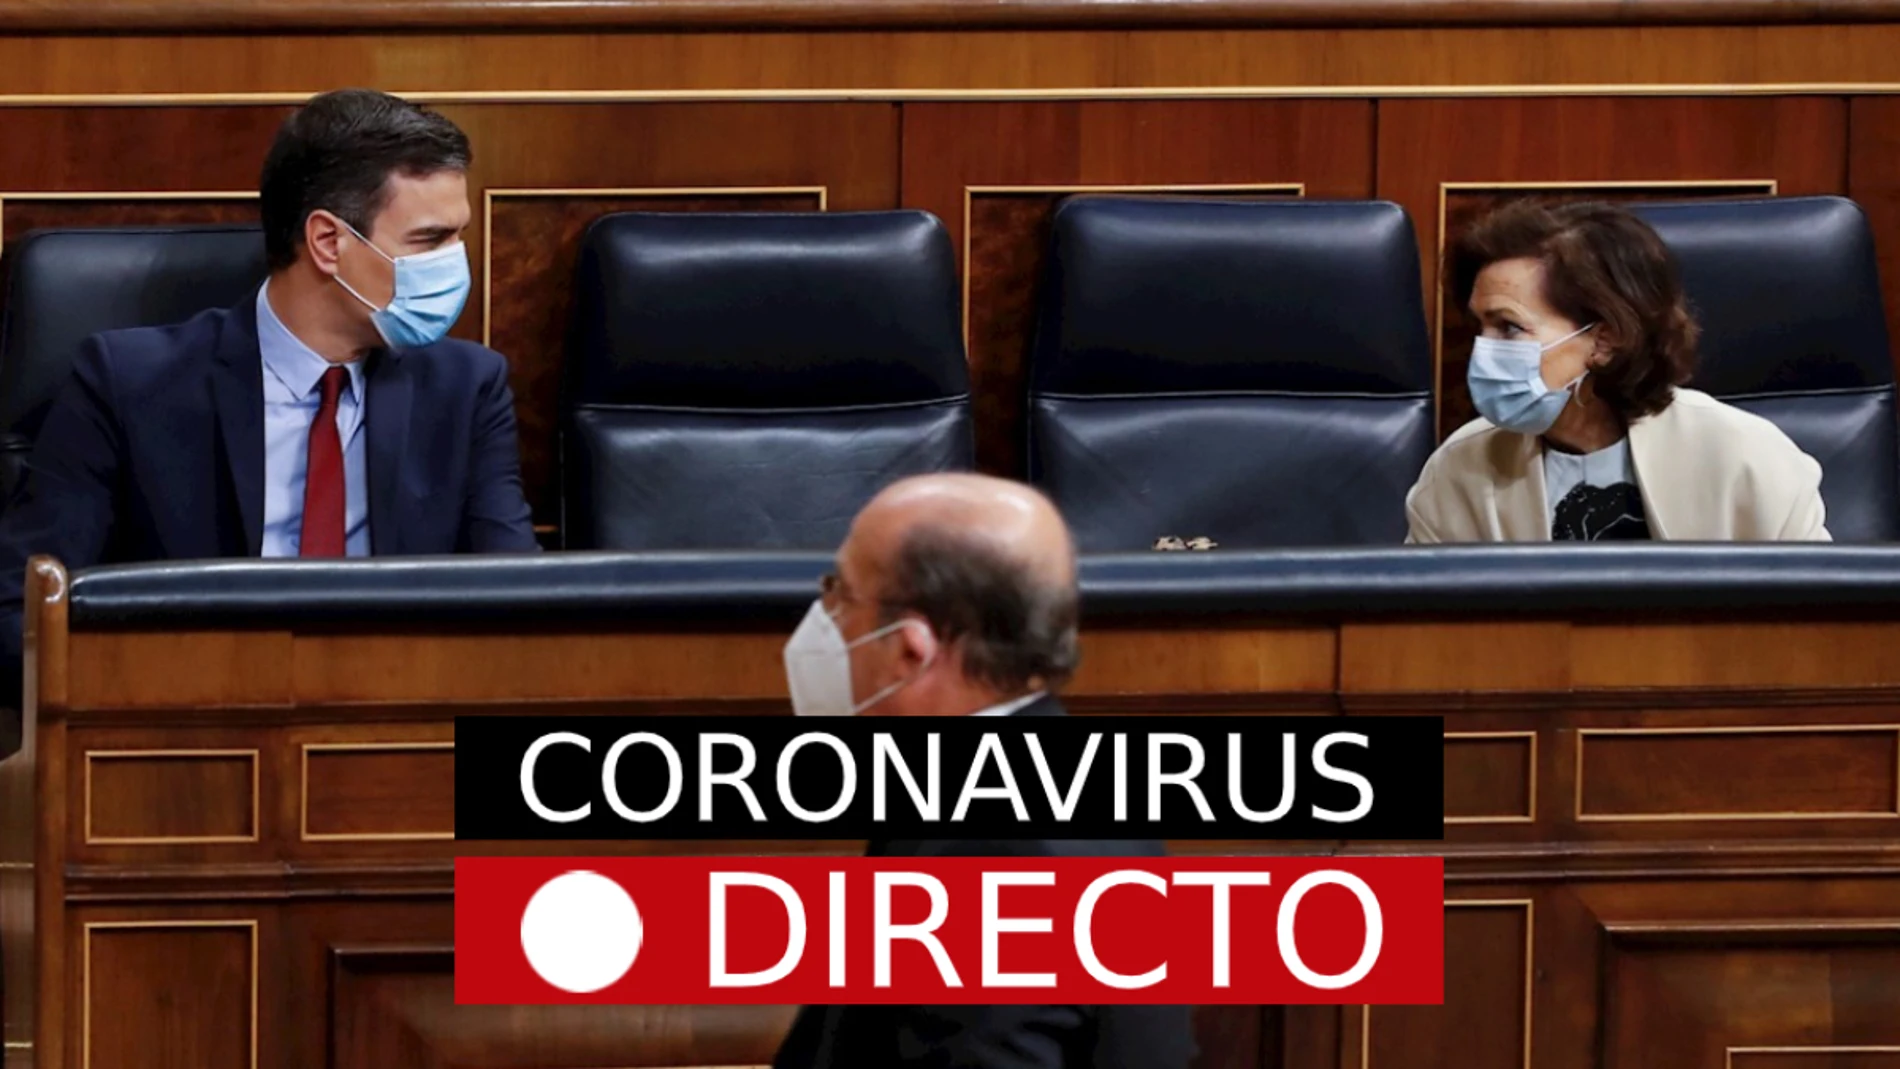 Coronavirus España: Estado de alarma hoy, datos de muertos y última hora de la fase 1, en directo